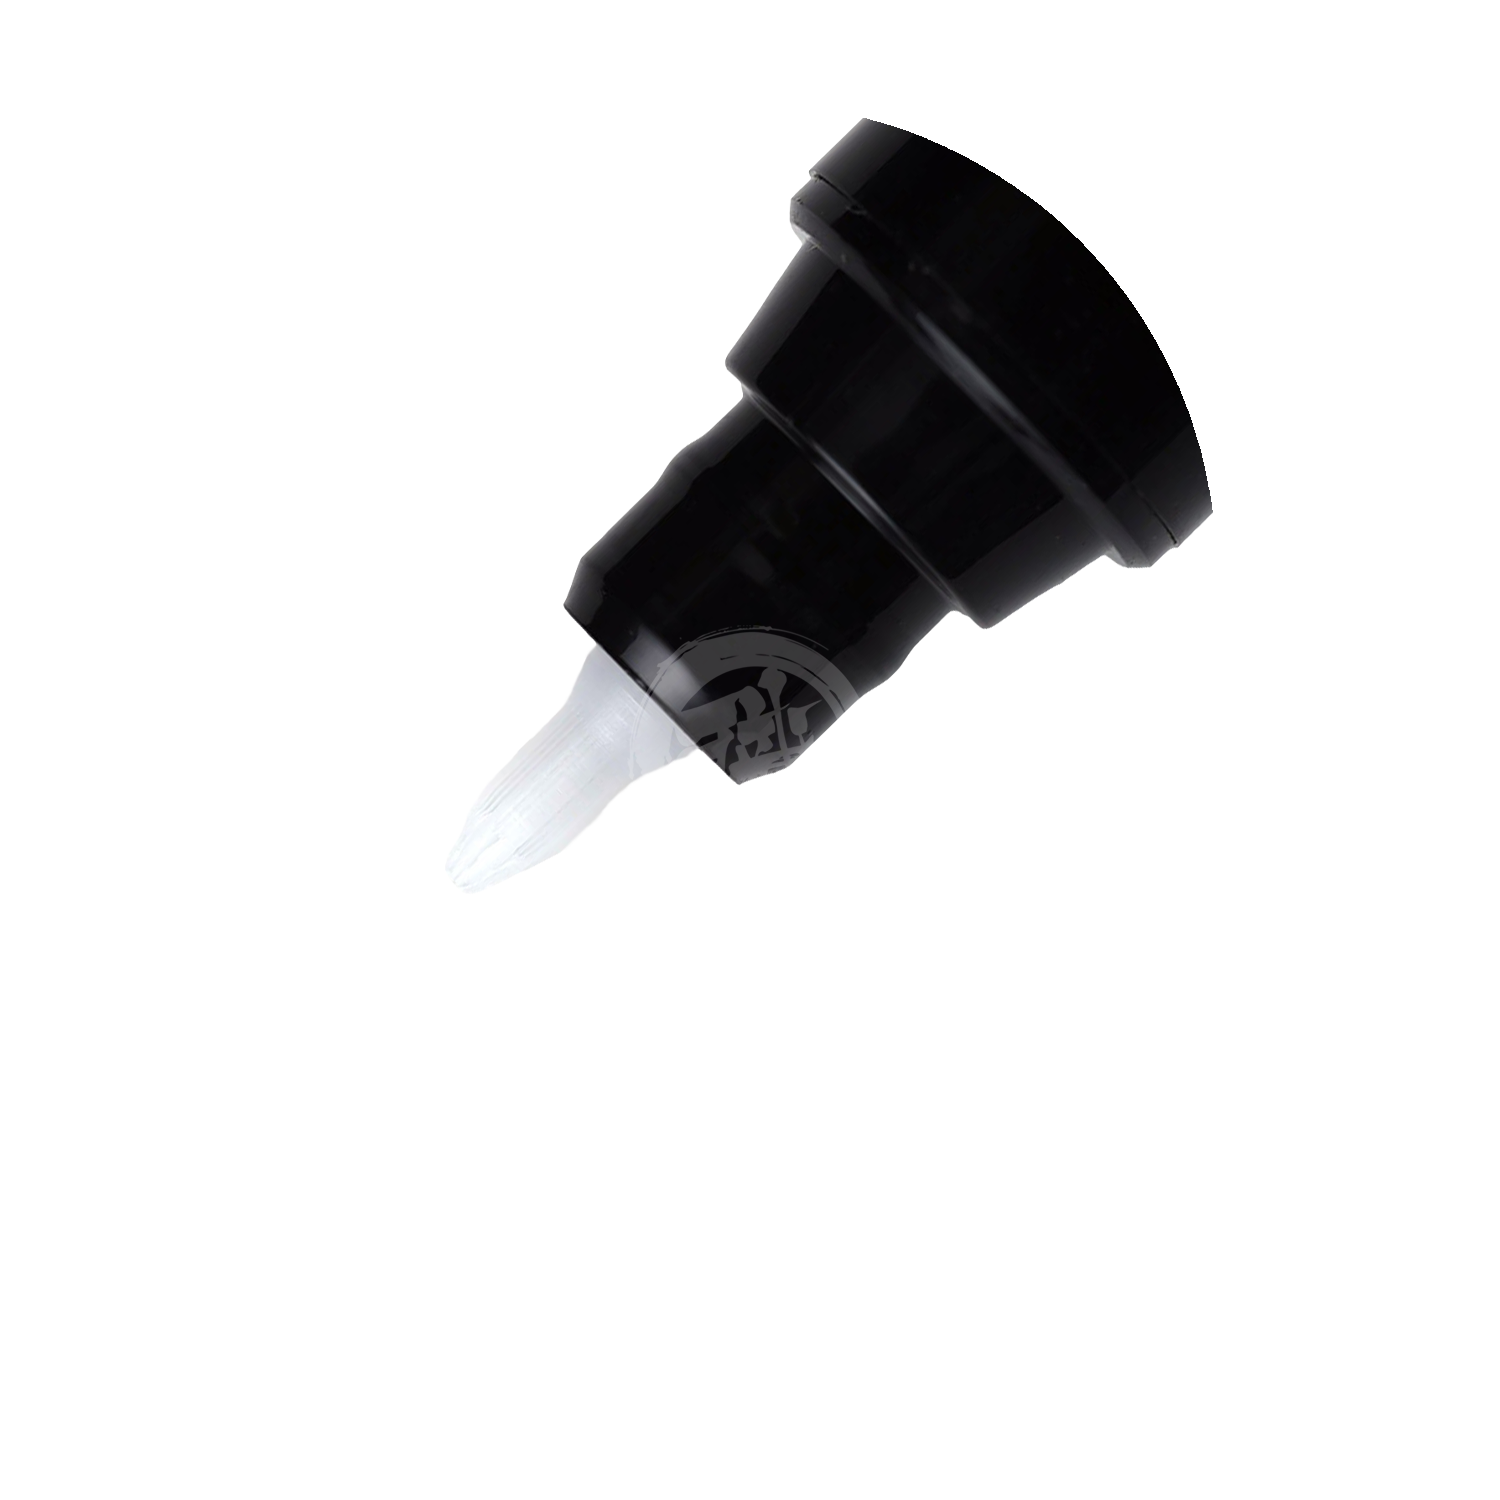 GSI Creos - [GM300] Gundam Marker Remover - ShokuninGunpla